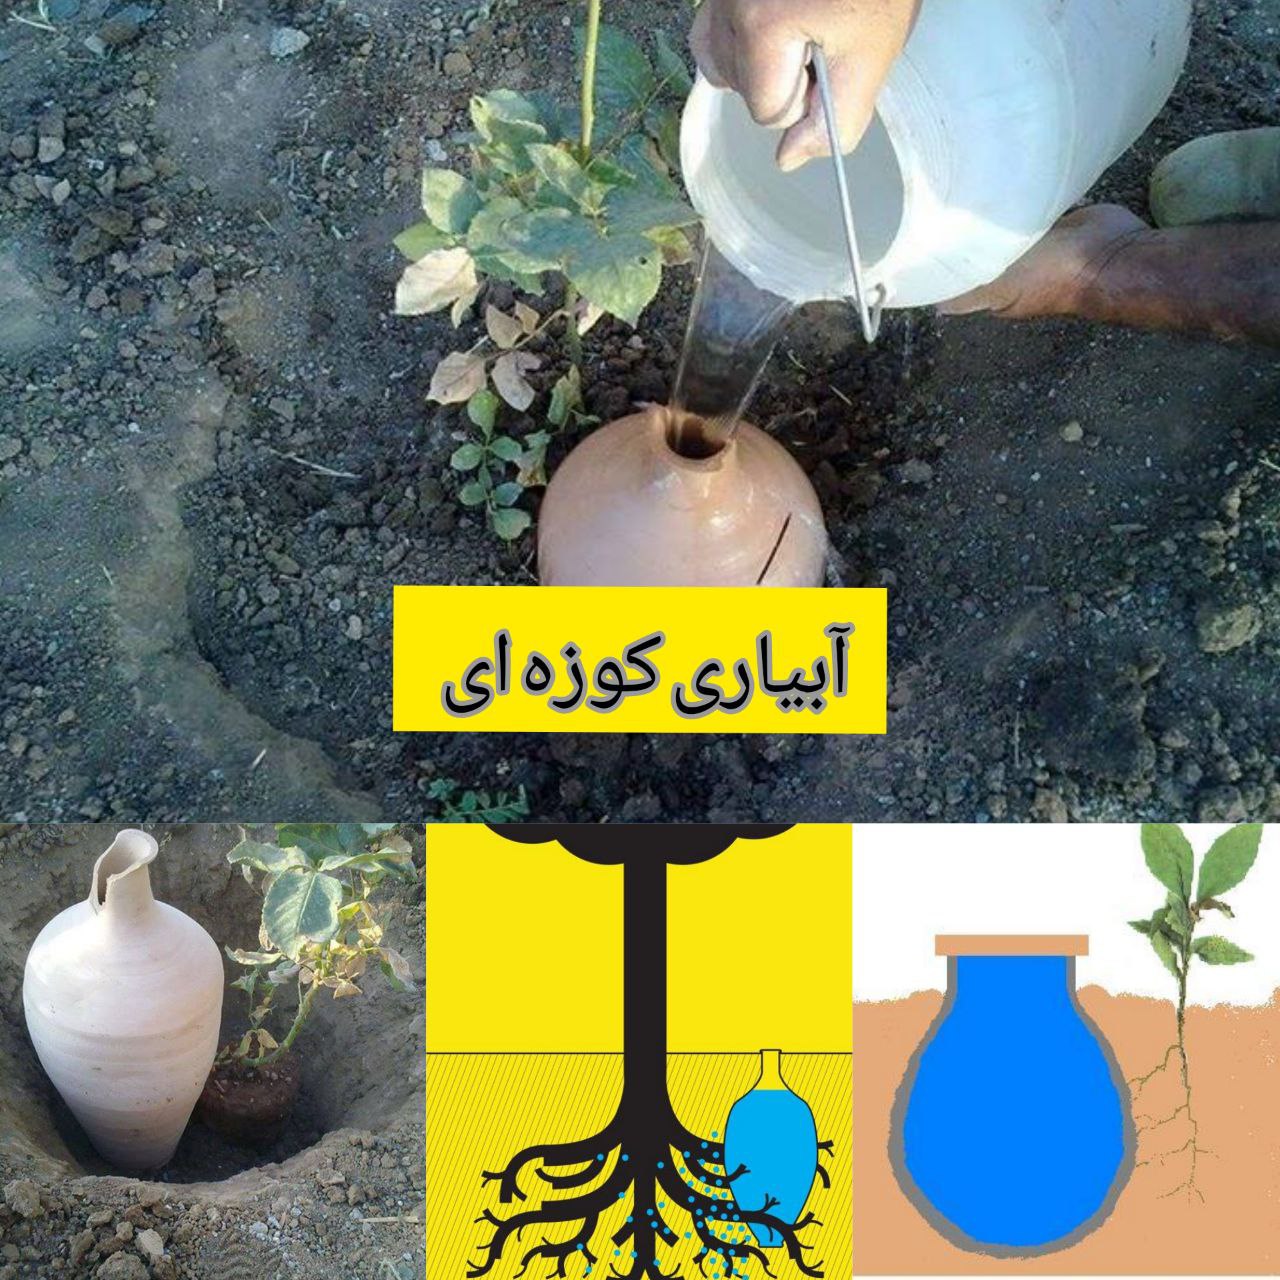 آبیاری کوزه ای یکی از ابتکارات ایرانیان برای سیراب کردن گیاهان در مناطق خشک و نیمه خشک بوده است. در 